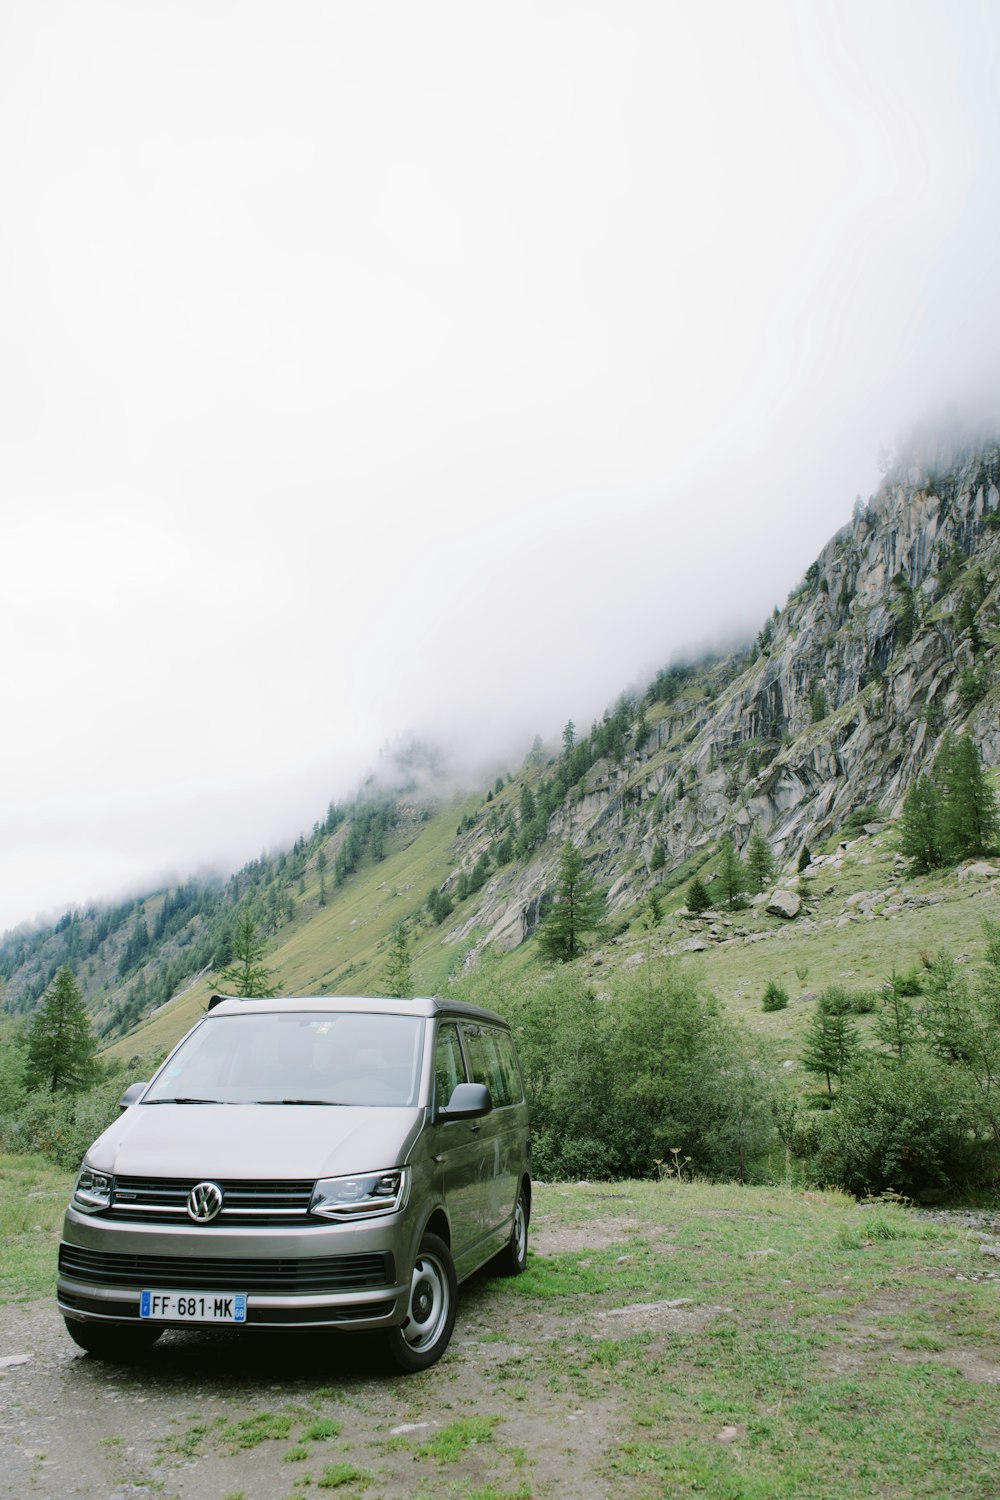 gray Volkswagen van on high ground